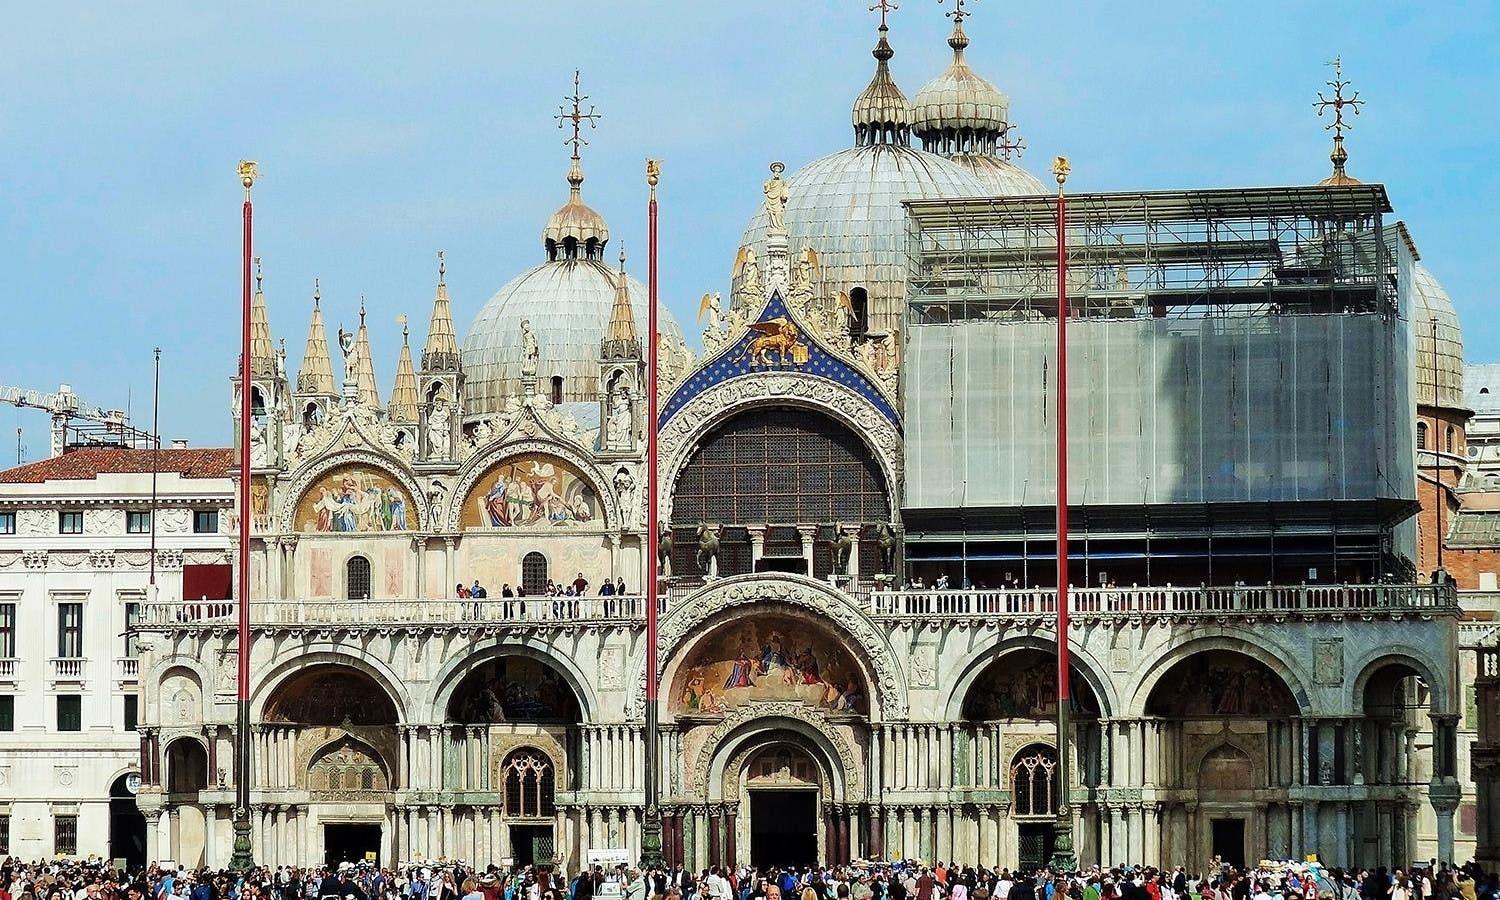 Tour a piedi di mattina a Venezia con visita alla Basilica di San Marco e giro in gondola